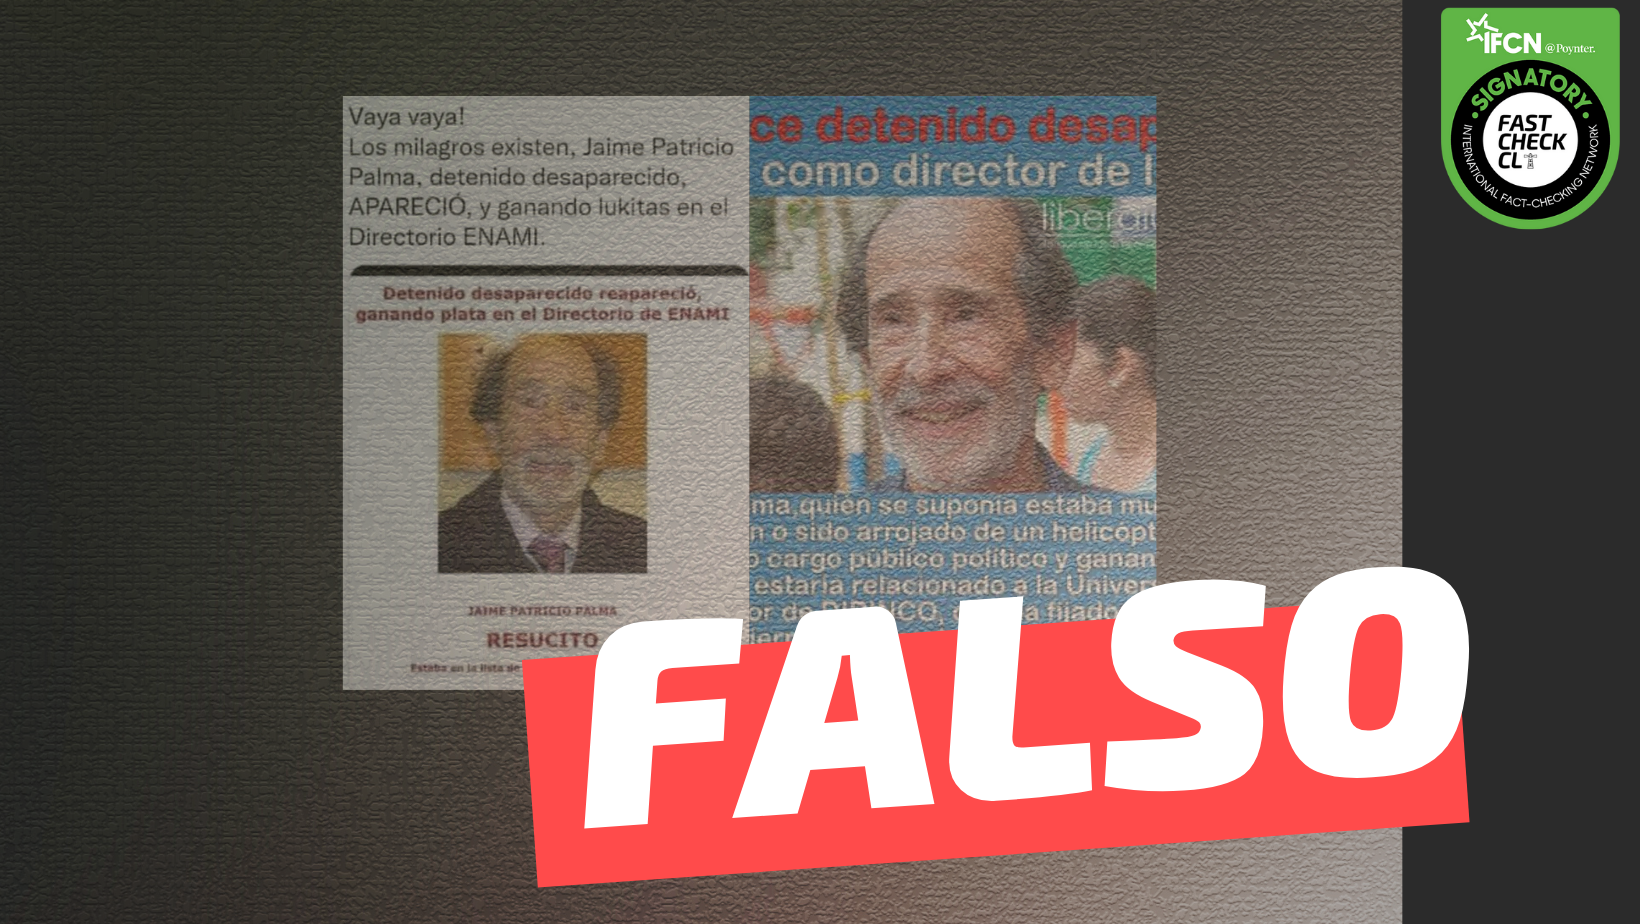 Read more about the article “Jaime Patricio Palma, detenido desaparecido, apareció como director de la ENAMI”: #Falso